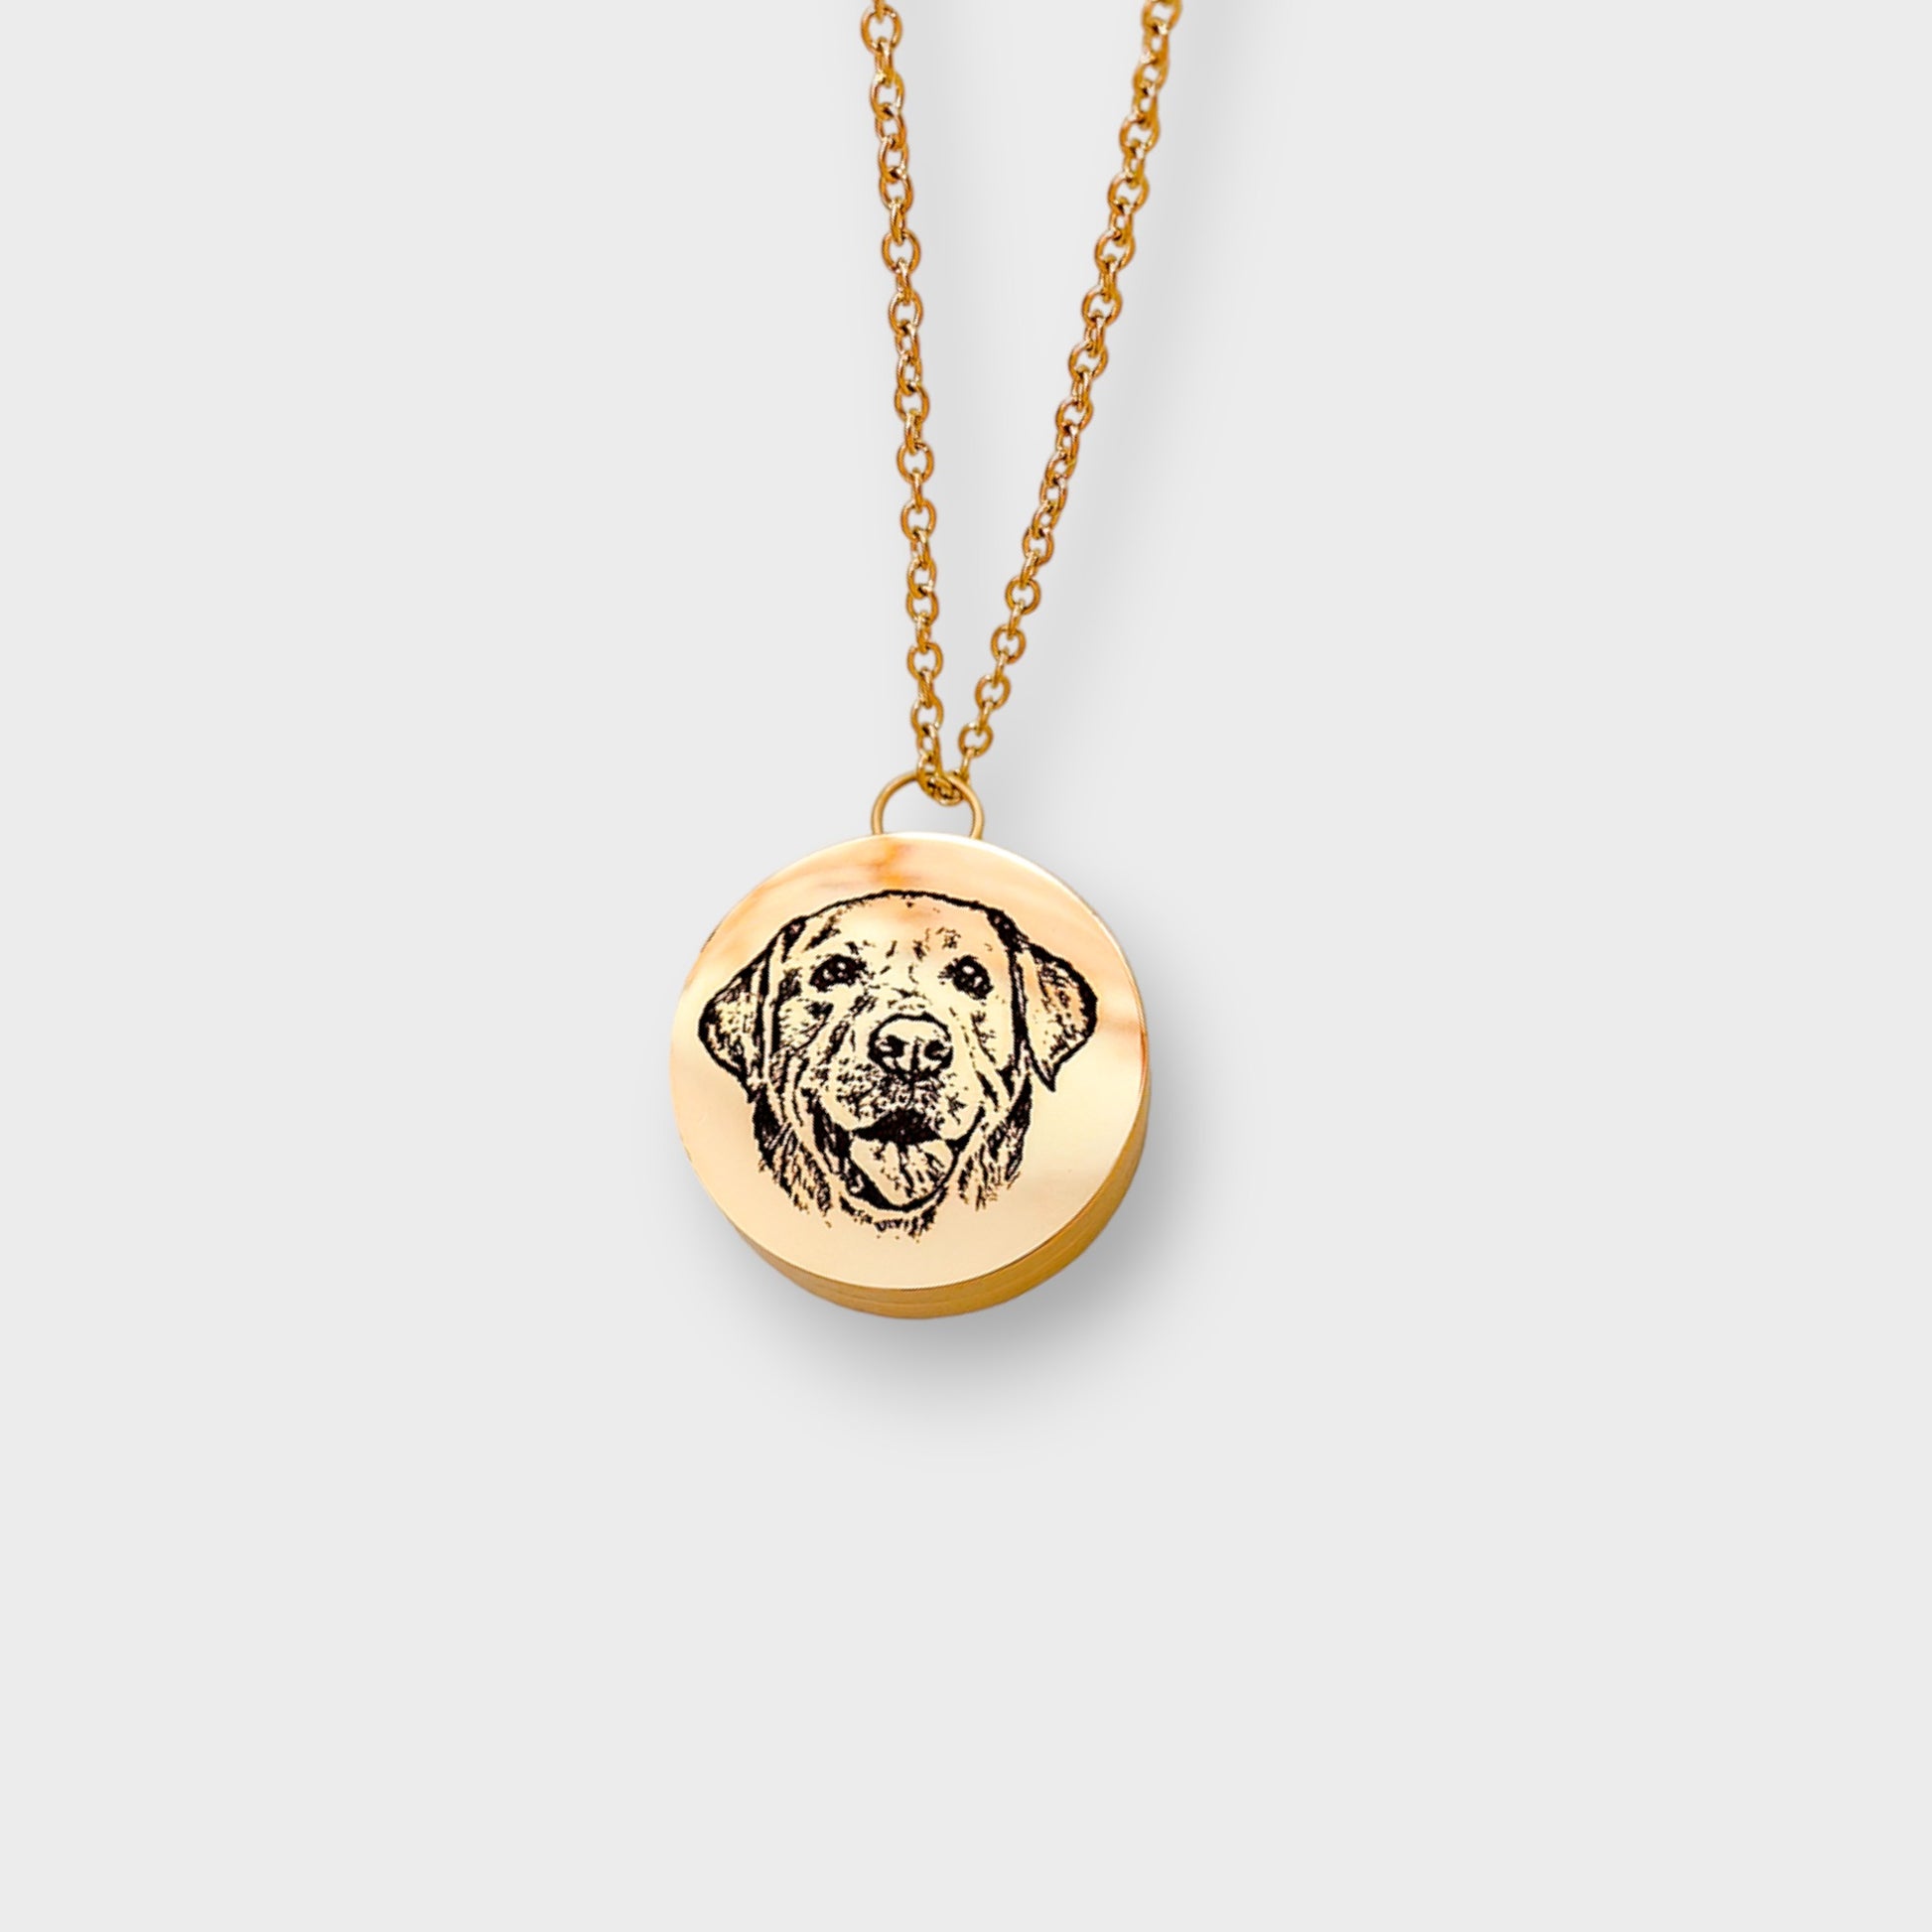 Pet pendants custom pet memorial gift gold color